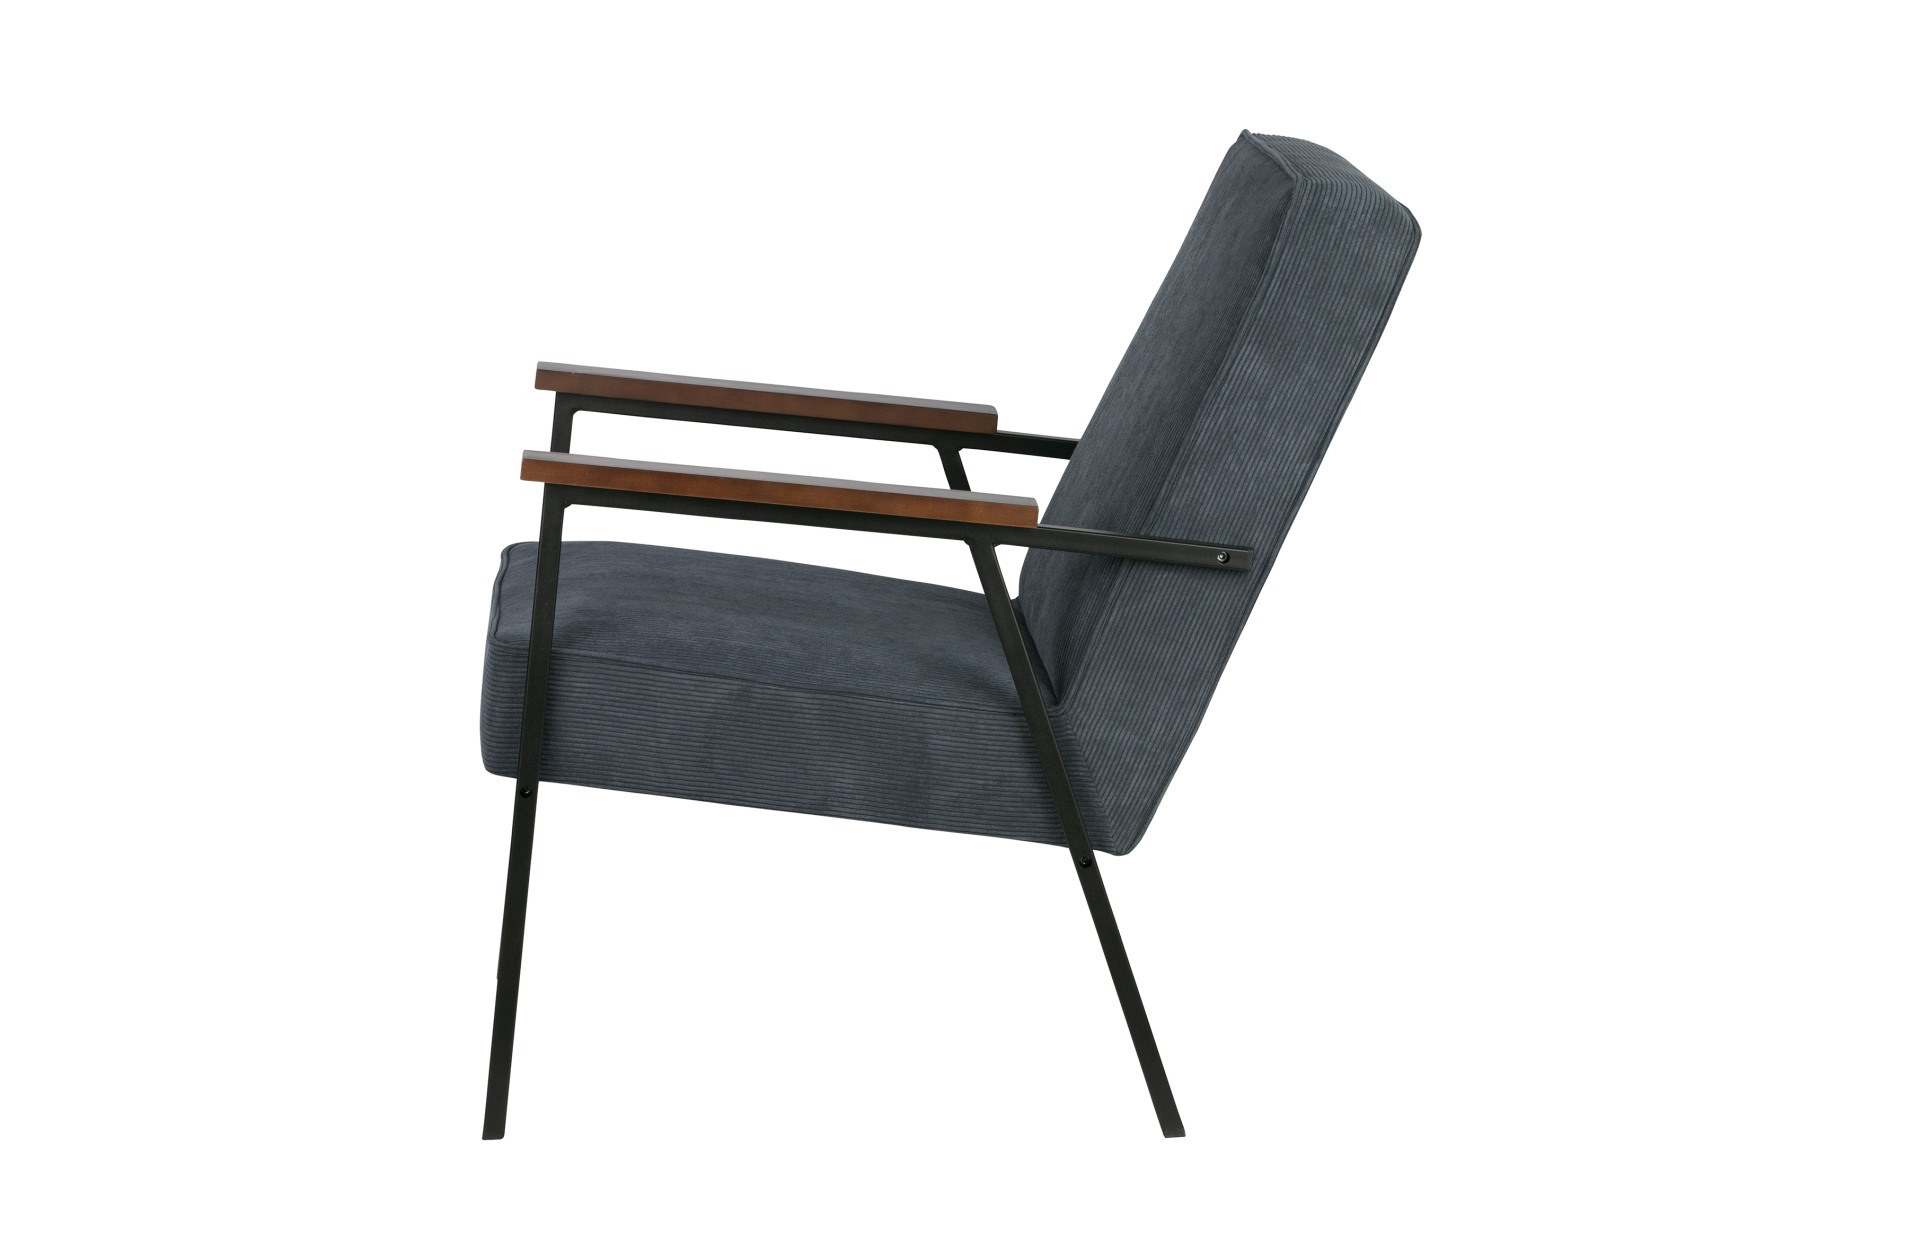 Der Stilvolle Sessel Sally überzeugt mit seinem skandinavisch aber auch modernen Design. Gefertigt wurde der Sessel aus Metall und hat einen Stoffbezug in Cord-Optik. Die zwei Armlehnen sorgen für einen bequemes Sitzen. Der Sessel hat die Farbe Stahlblau.